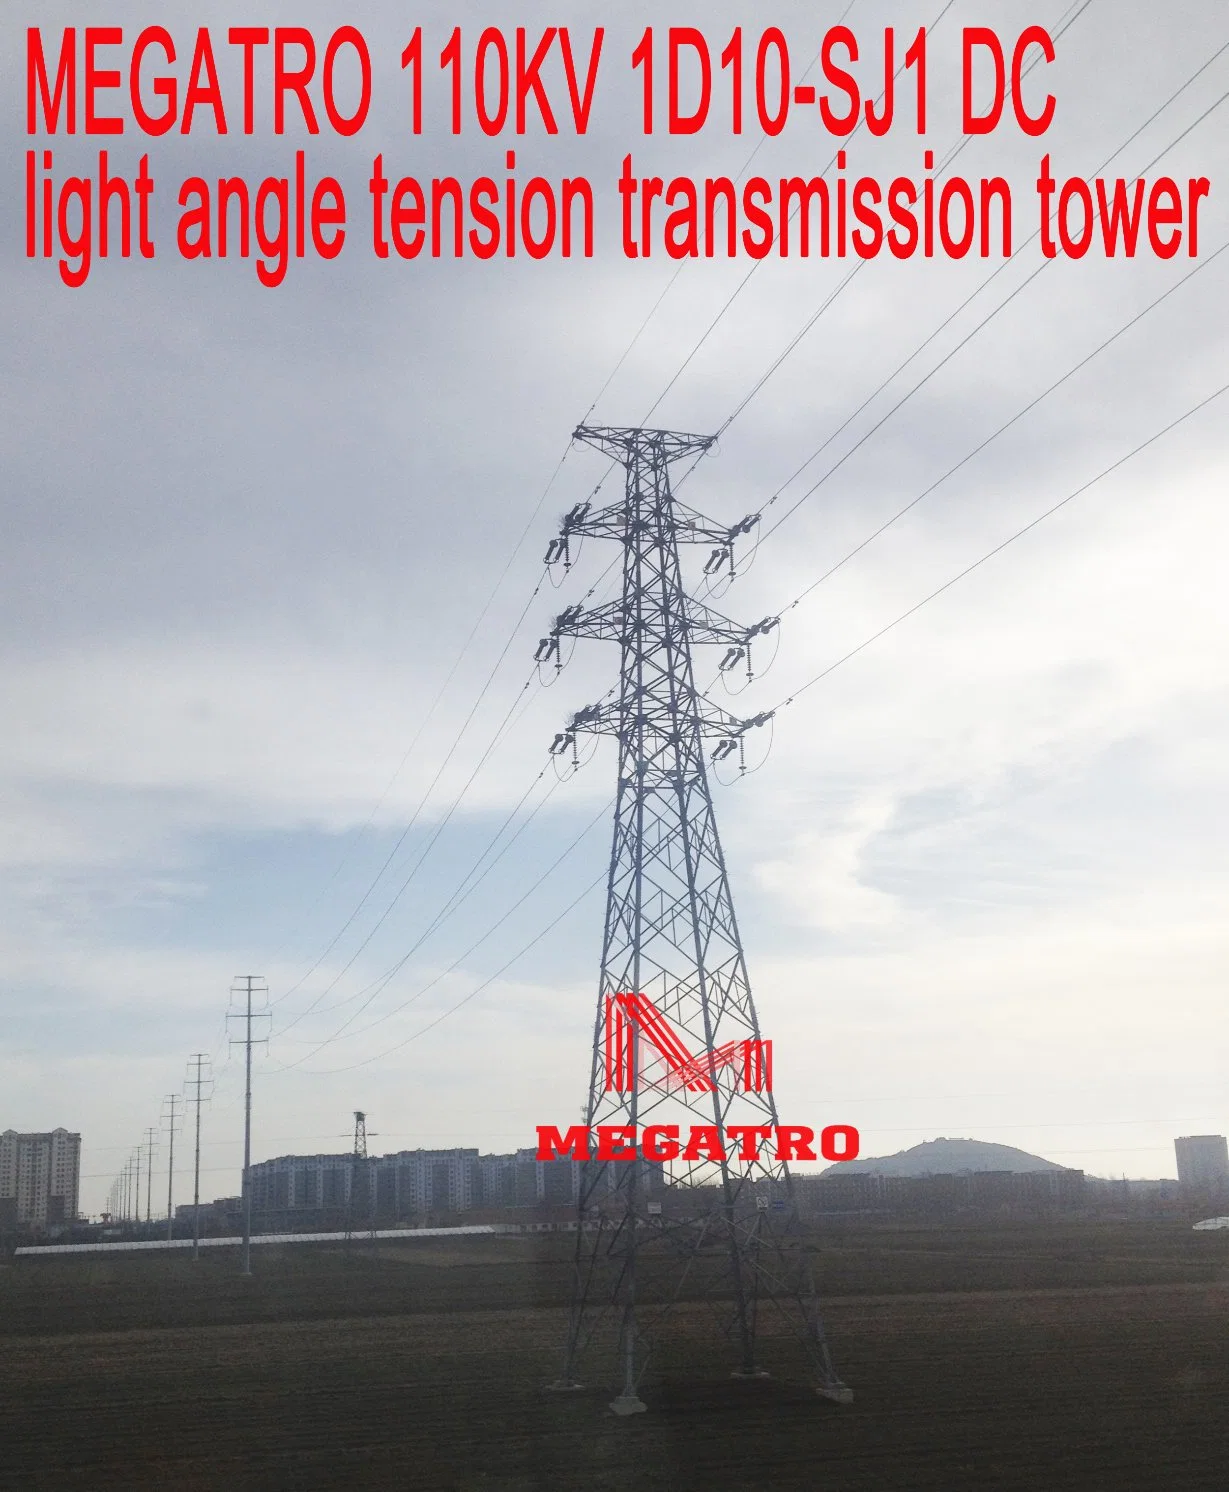 Megatro 110kv 1d10-Sj1 DC Light Angle Tension Transmission Tower